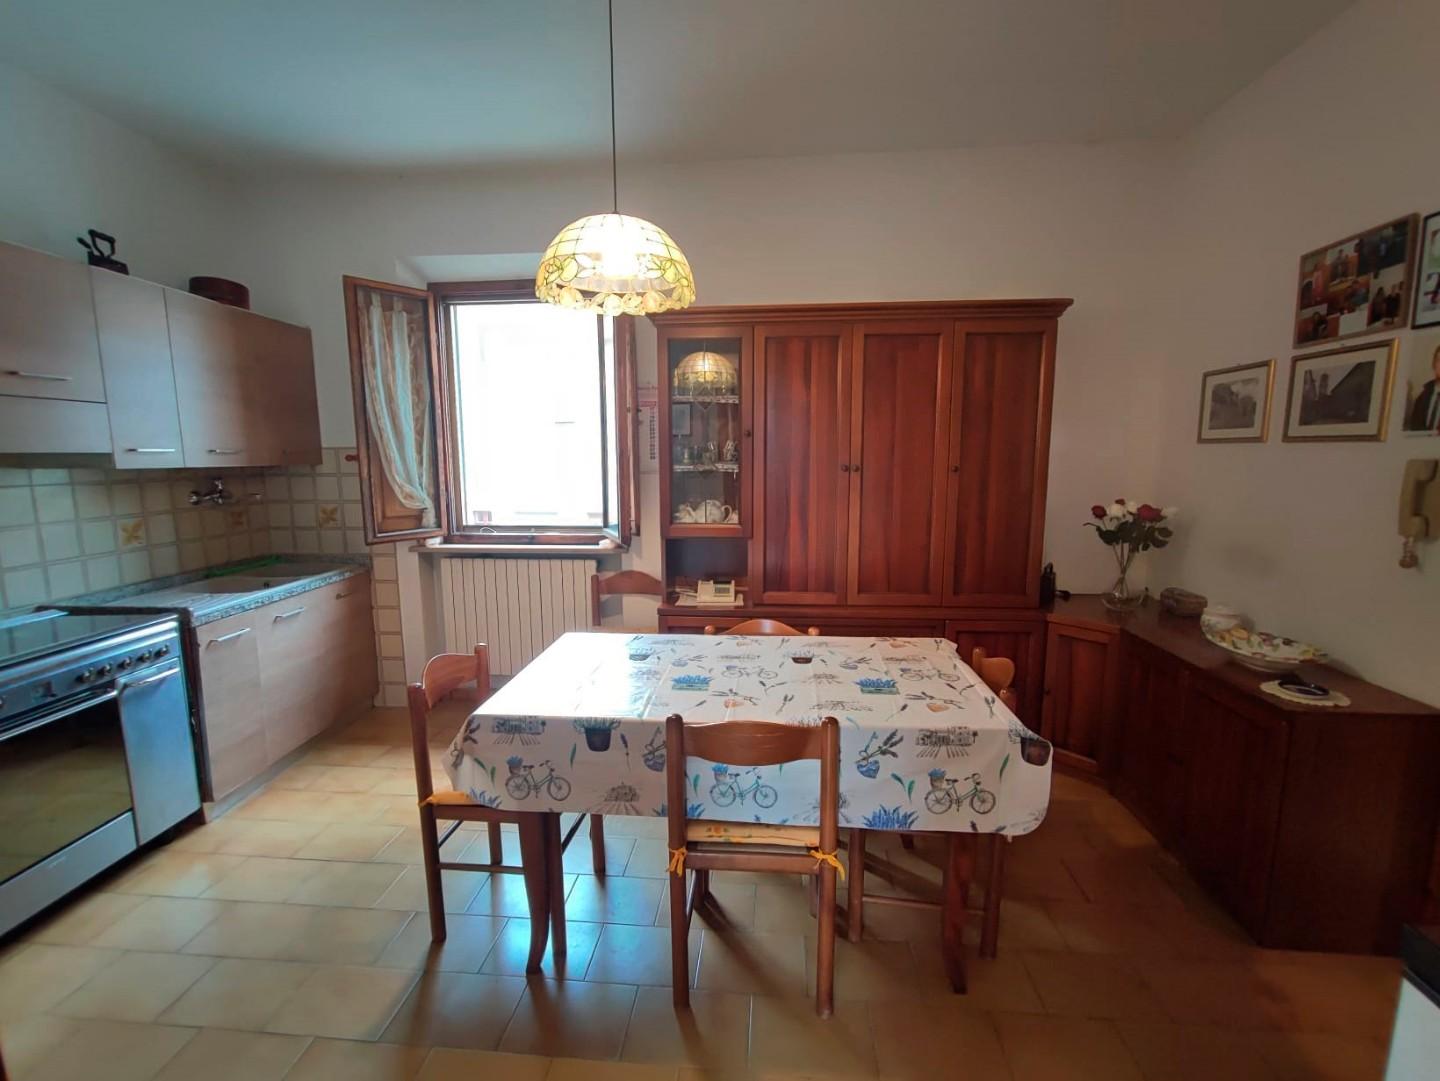 Appartamento in vendita a Palaia, 5 locali, prezzo € 80.000 | PortaleAgenzieImmobiliari.it